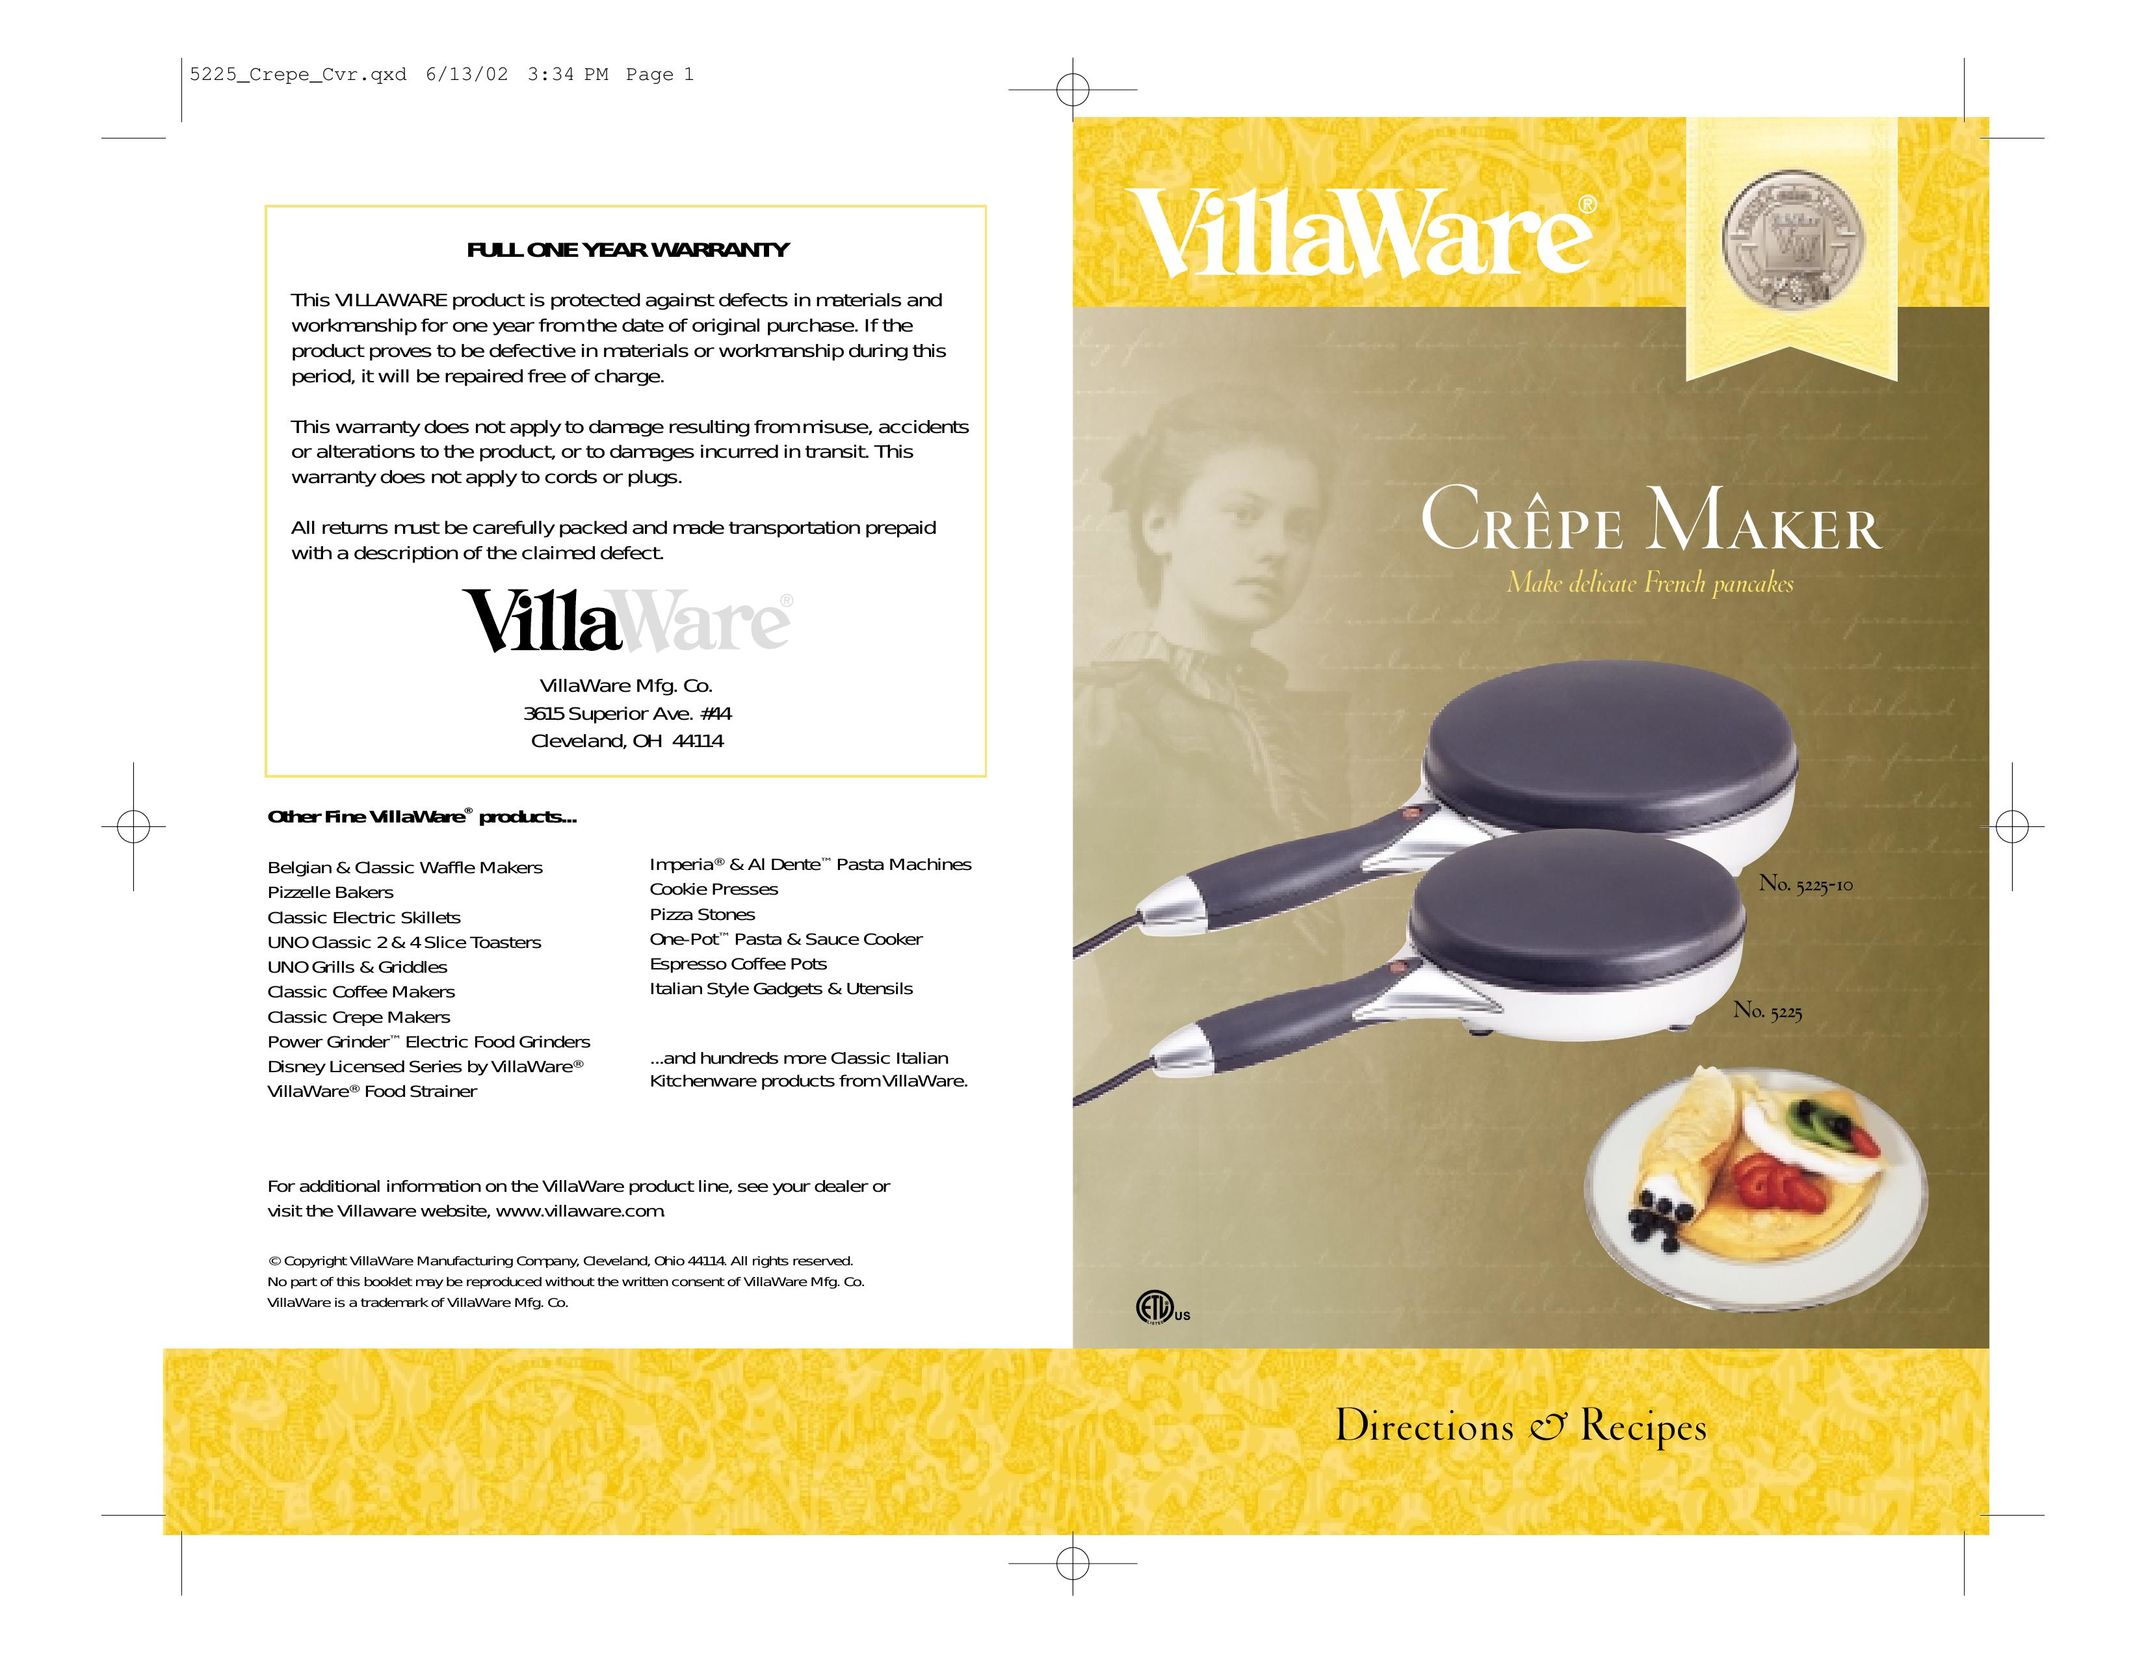 Villaware Crpe Maker Crepe Maker User Manual